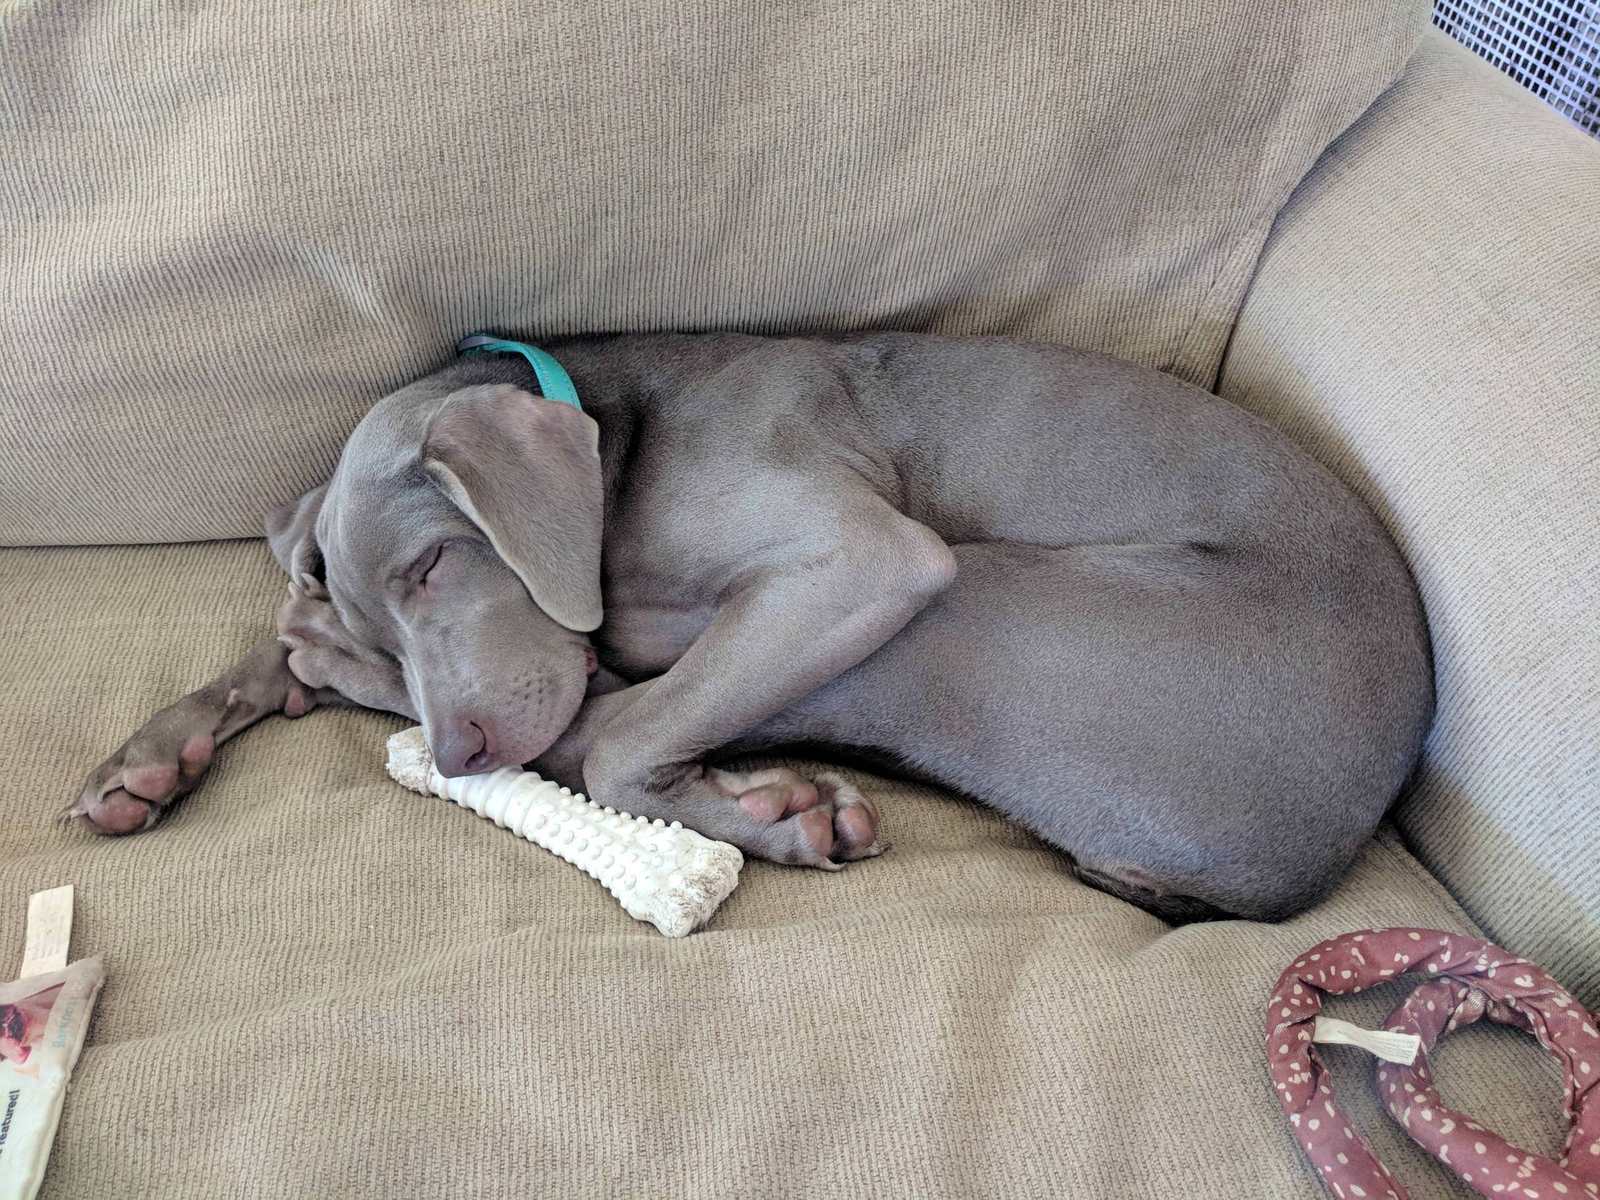 Sleepy Sunday - Dog, Dream, Sunday